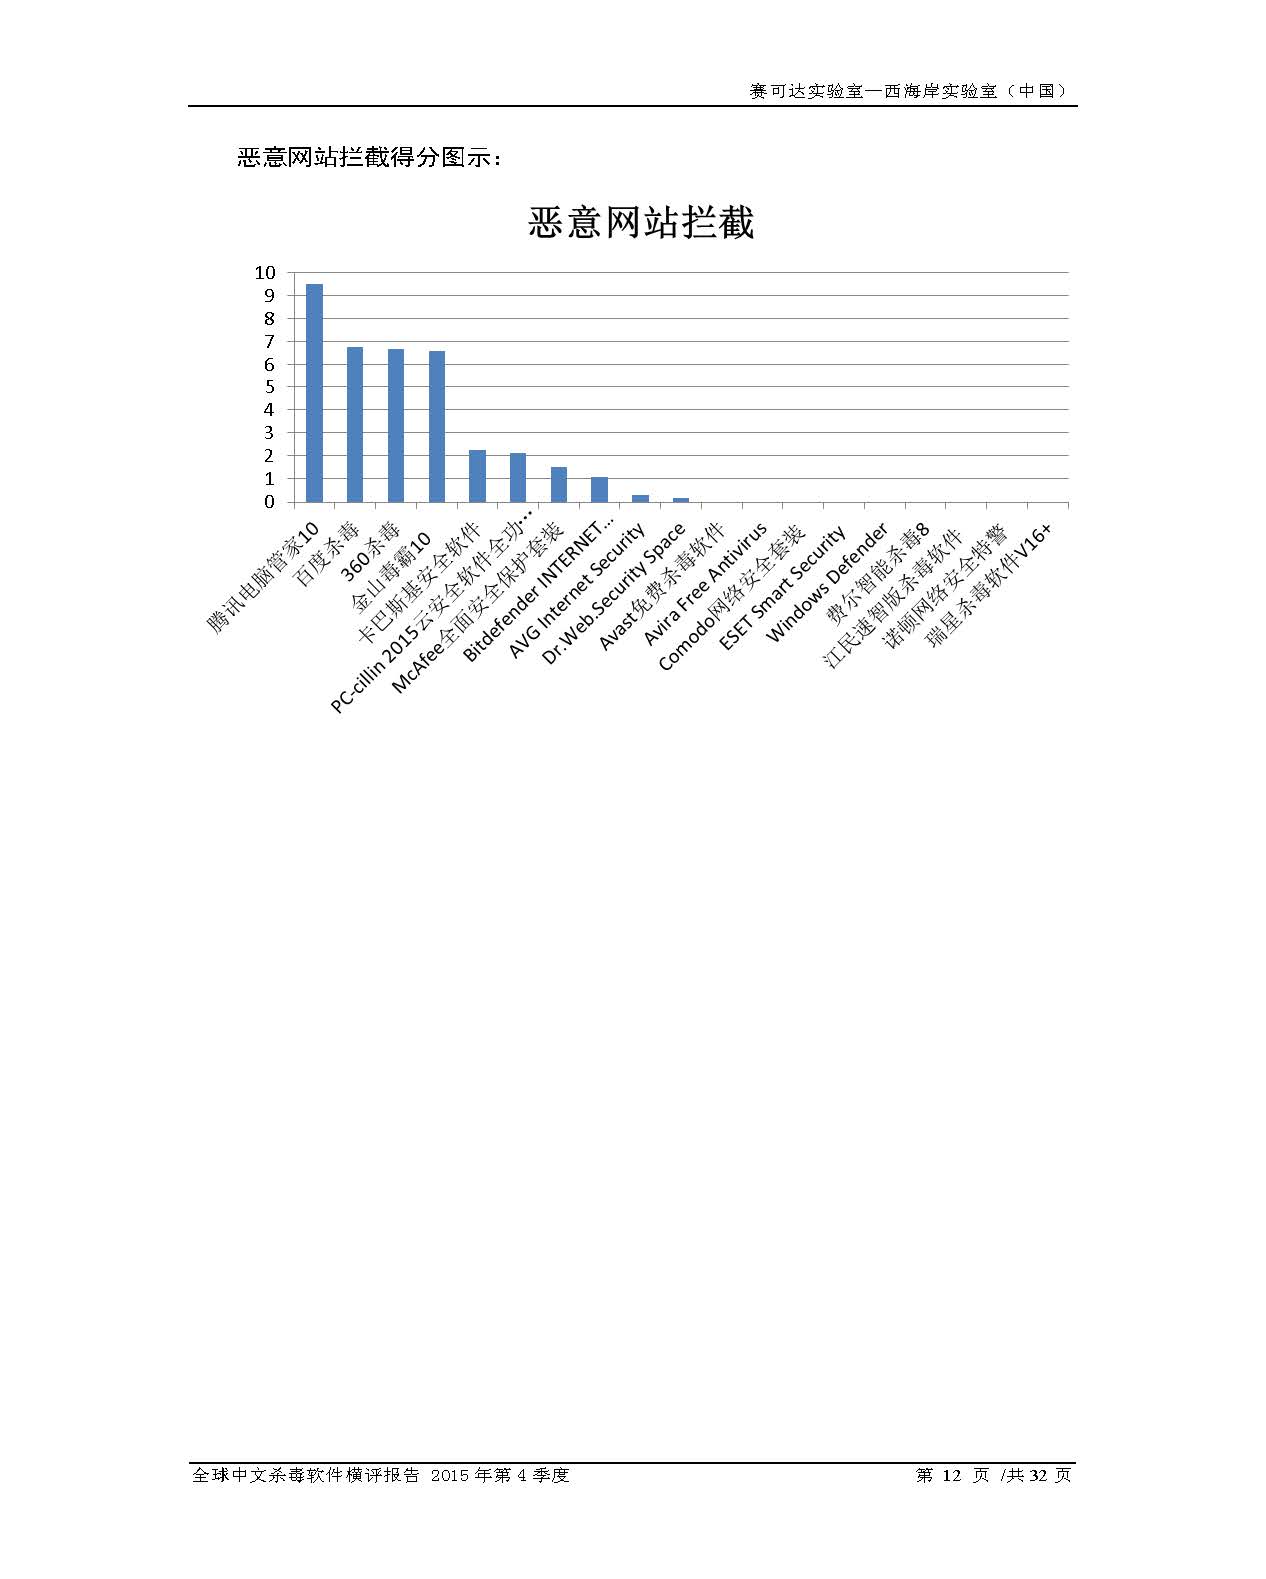 中文PC杀毒软件横评测试报告- Windows 8.1【中文版】.pdf (_Page_14.jpg